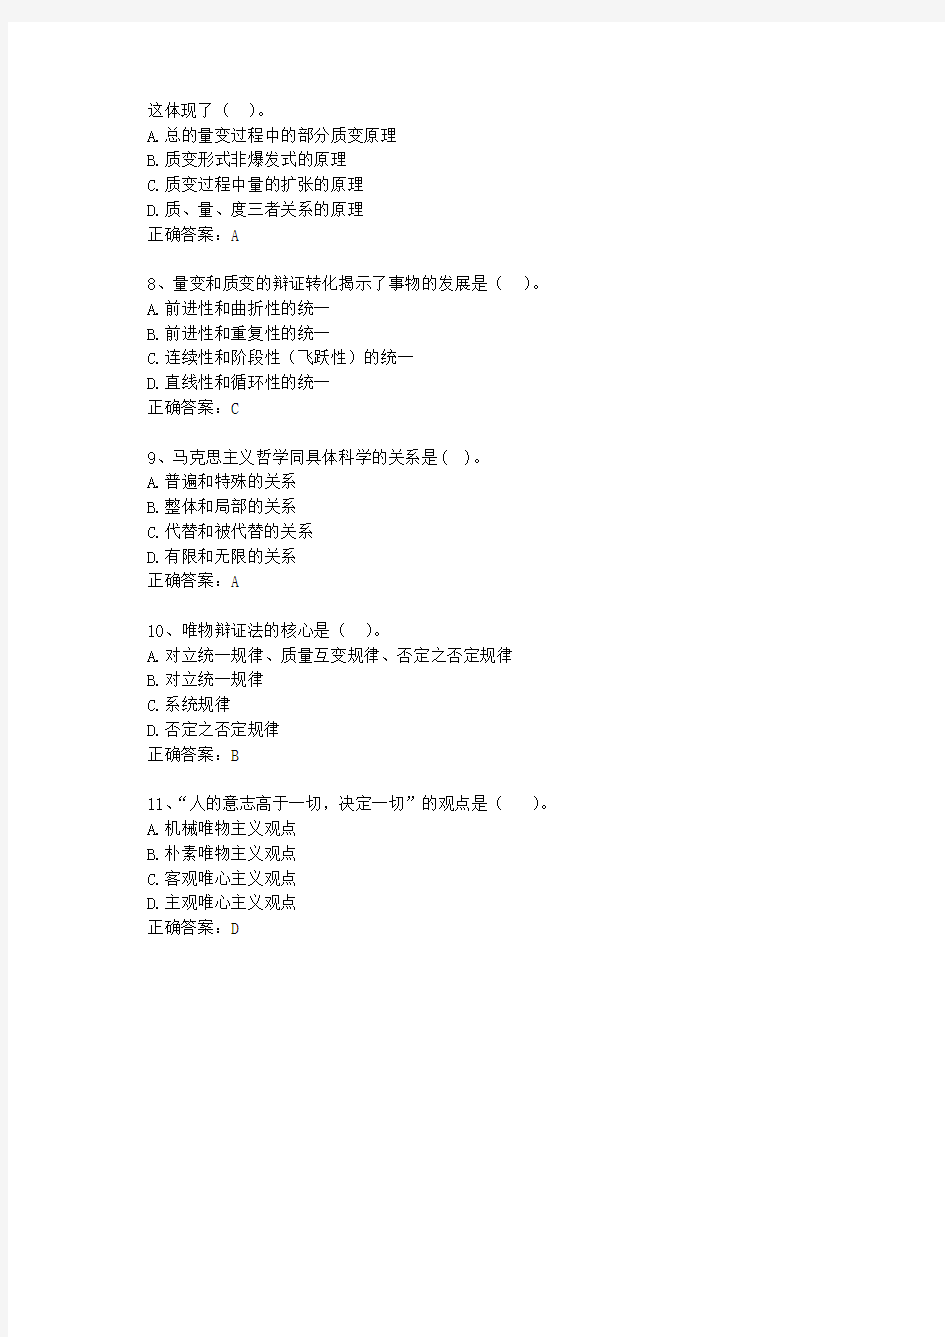 2010安徽省事业单位招聘考试公共基础知识(必备资料)